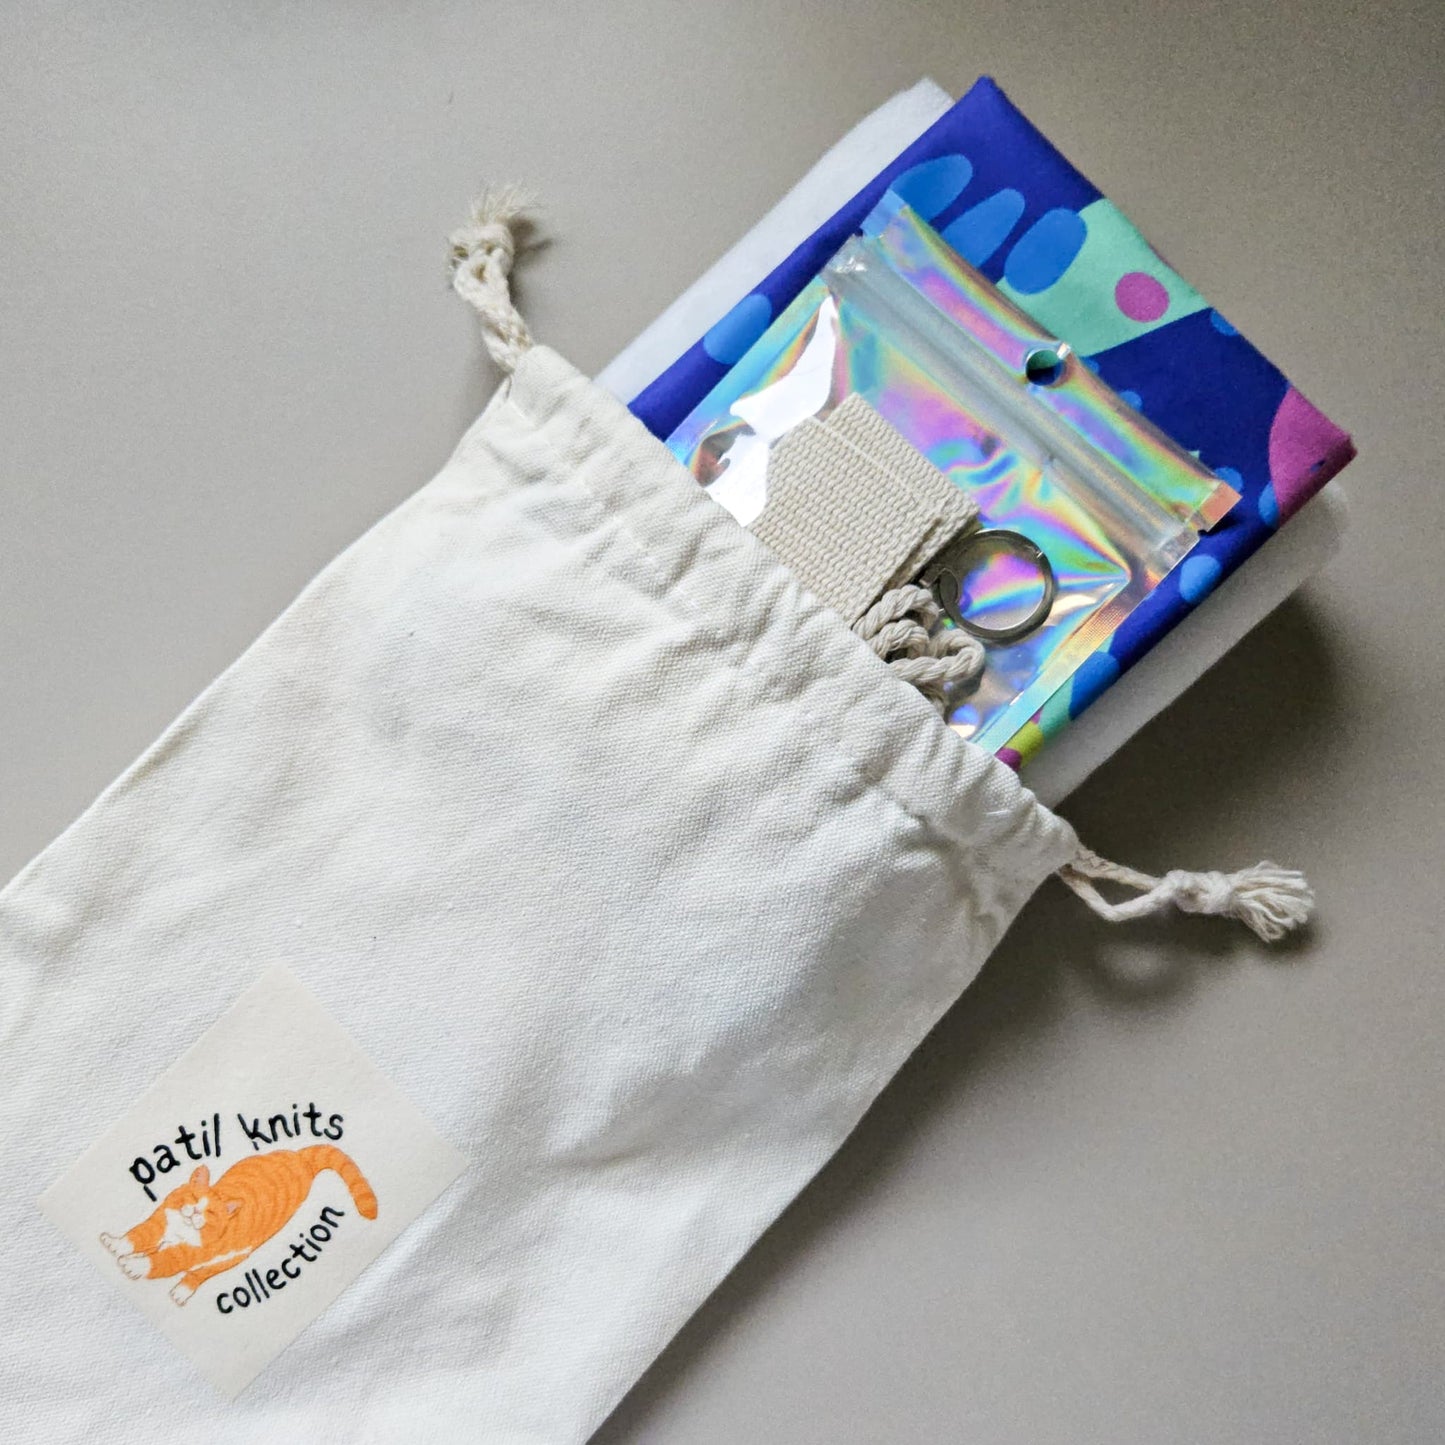 Patil Knits Marshmallow Bag Sewing Pattern Kit - Sushi